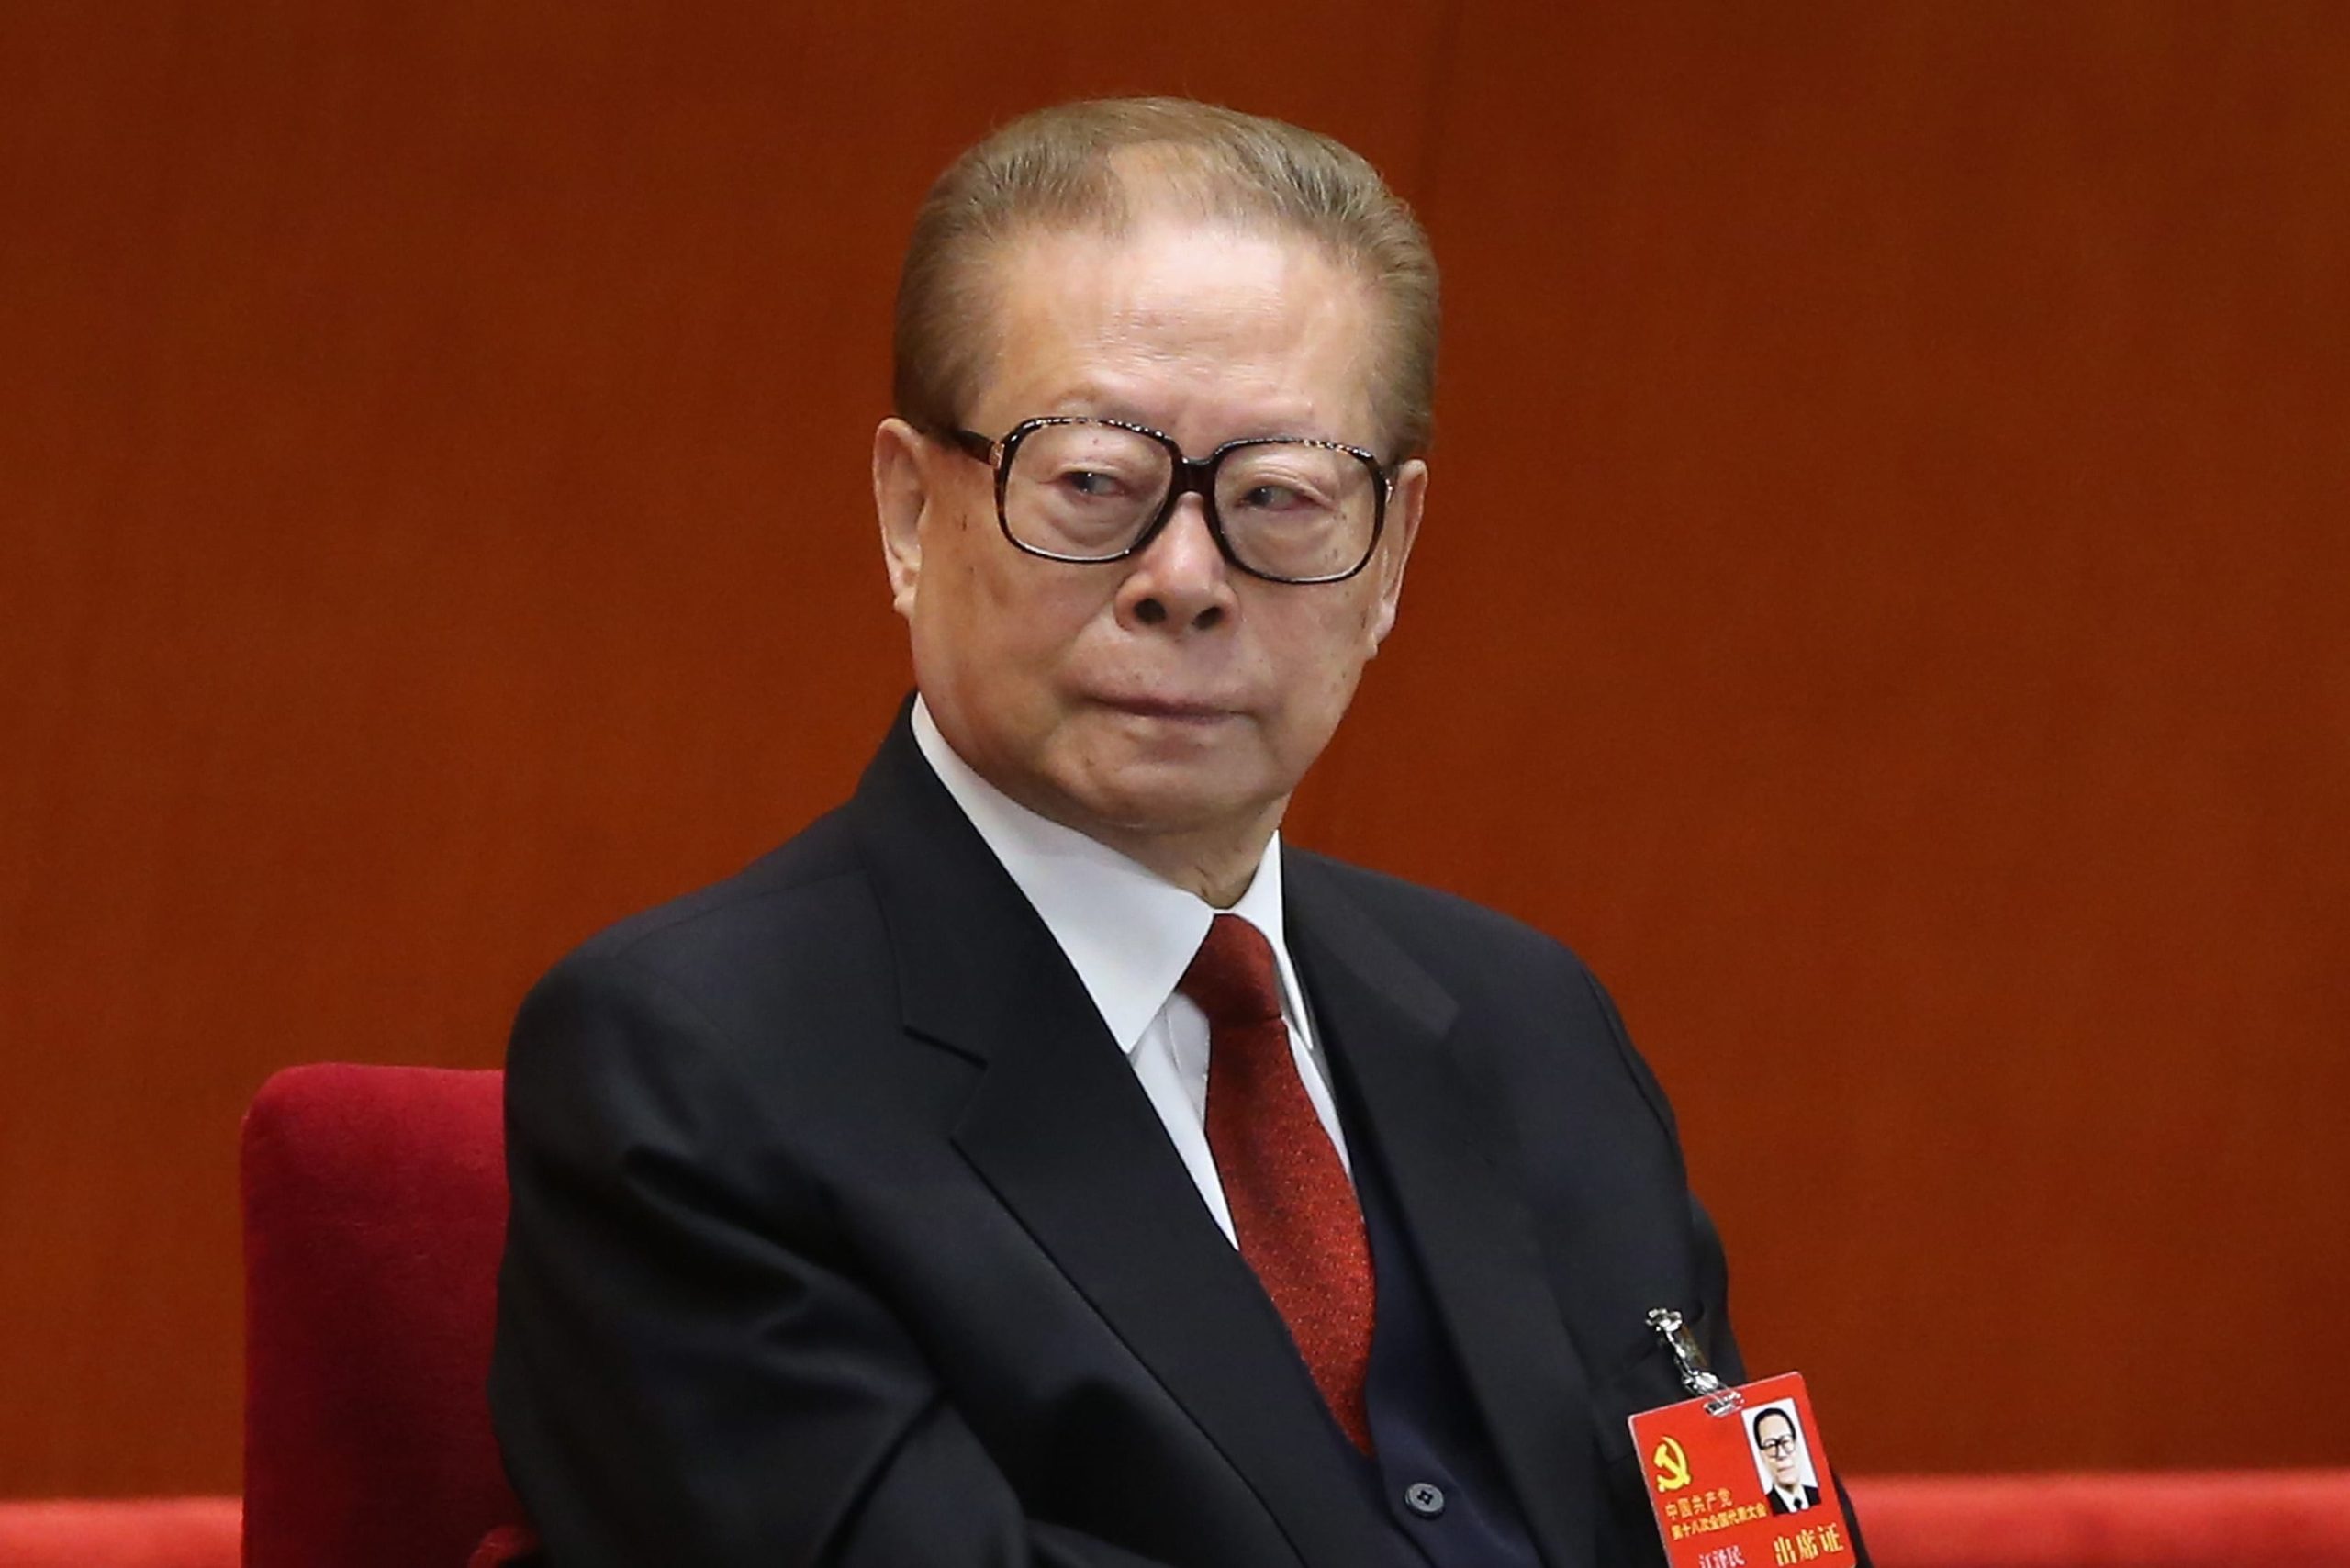 Ζιάνγκ Ζεμίν: Πέθανε ο πρώην πρόεδρος της Κίνας σε ηλικία 96 ετών